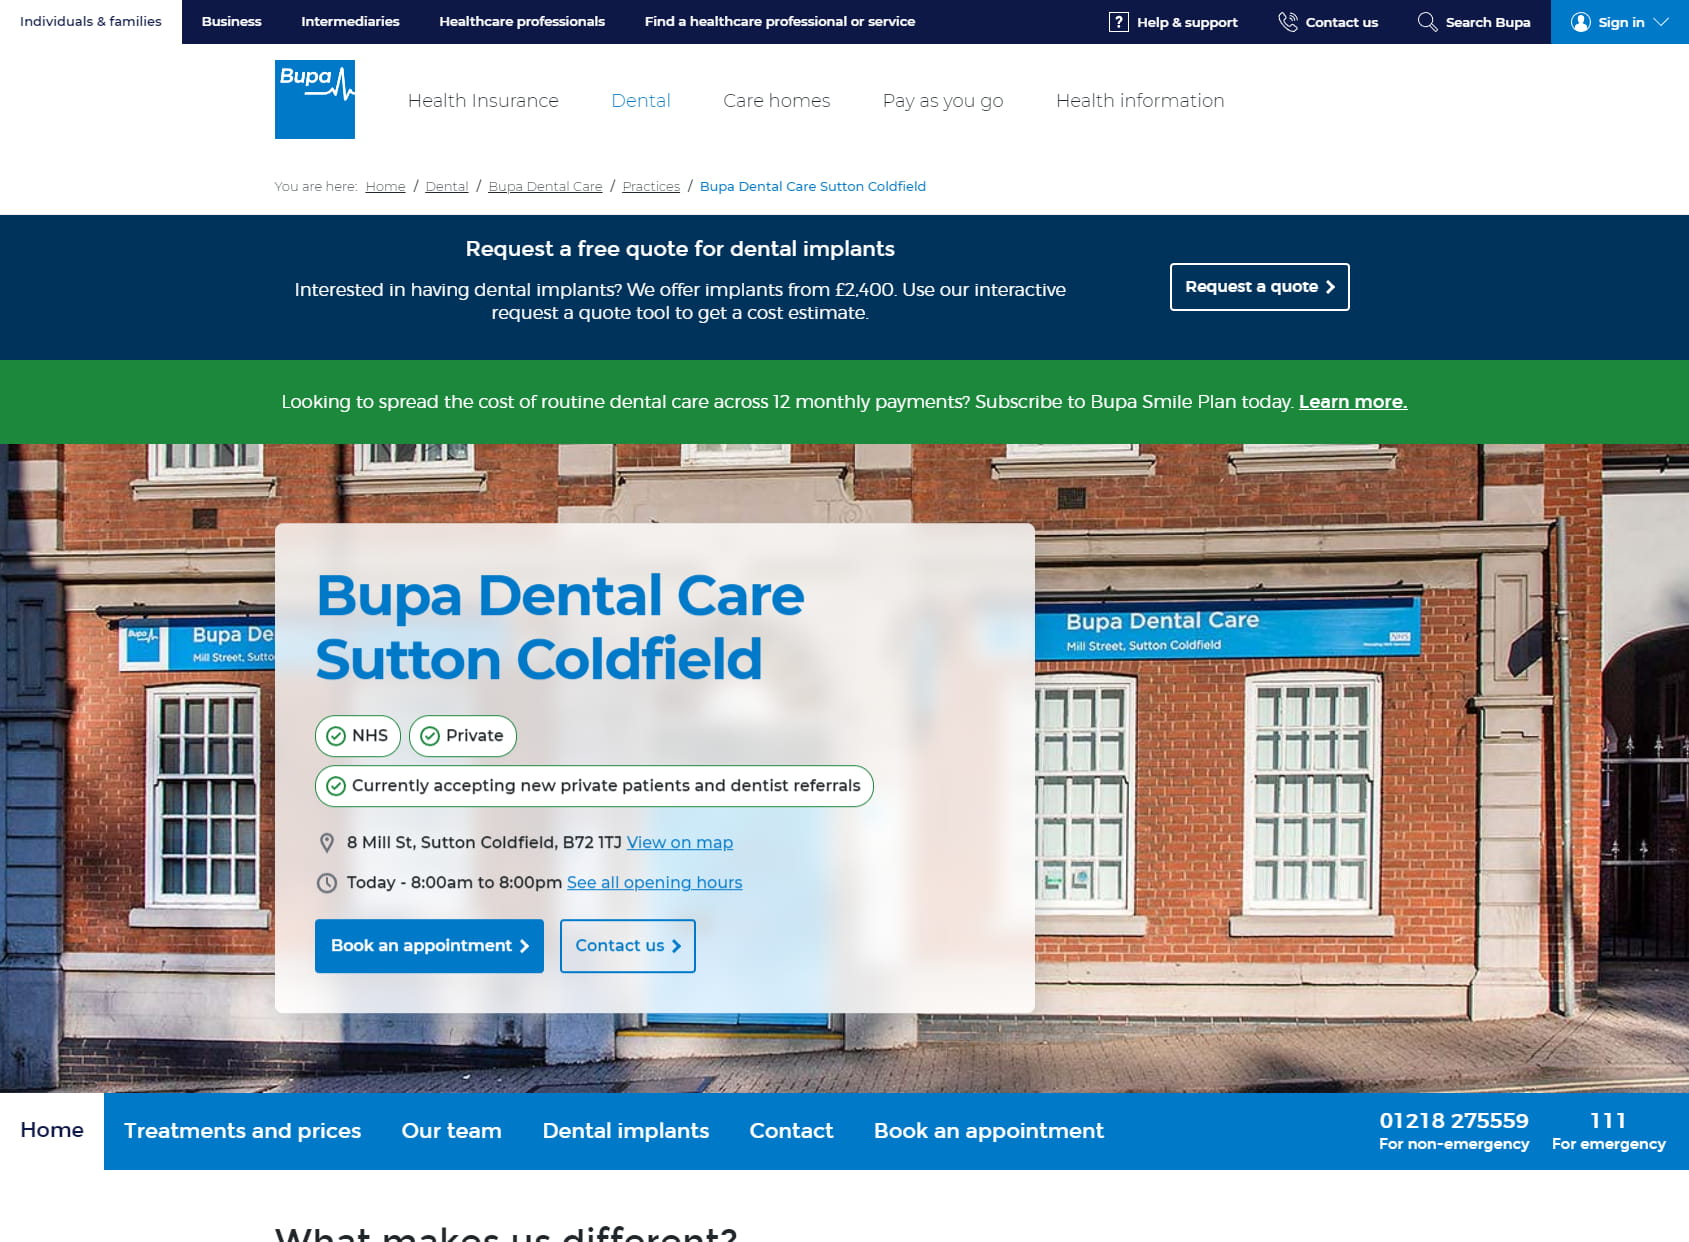 Bupa Dental Care Sutton Coldfield